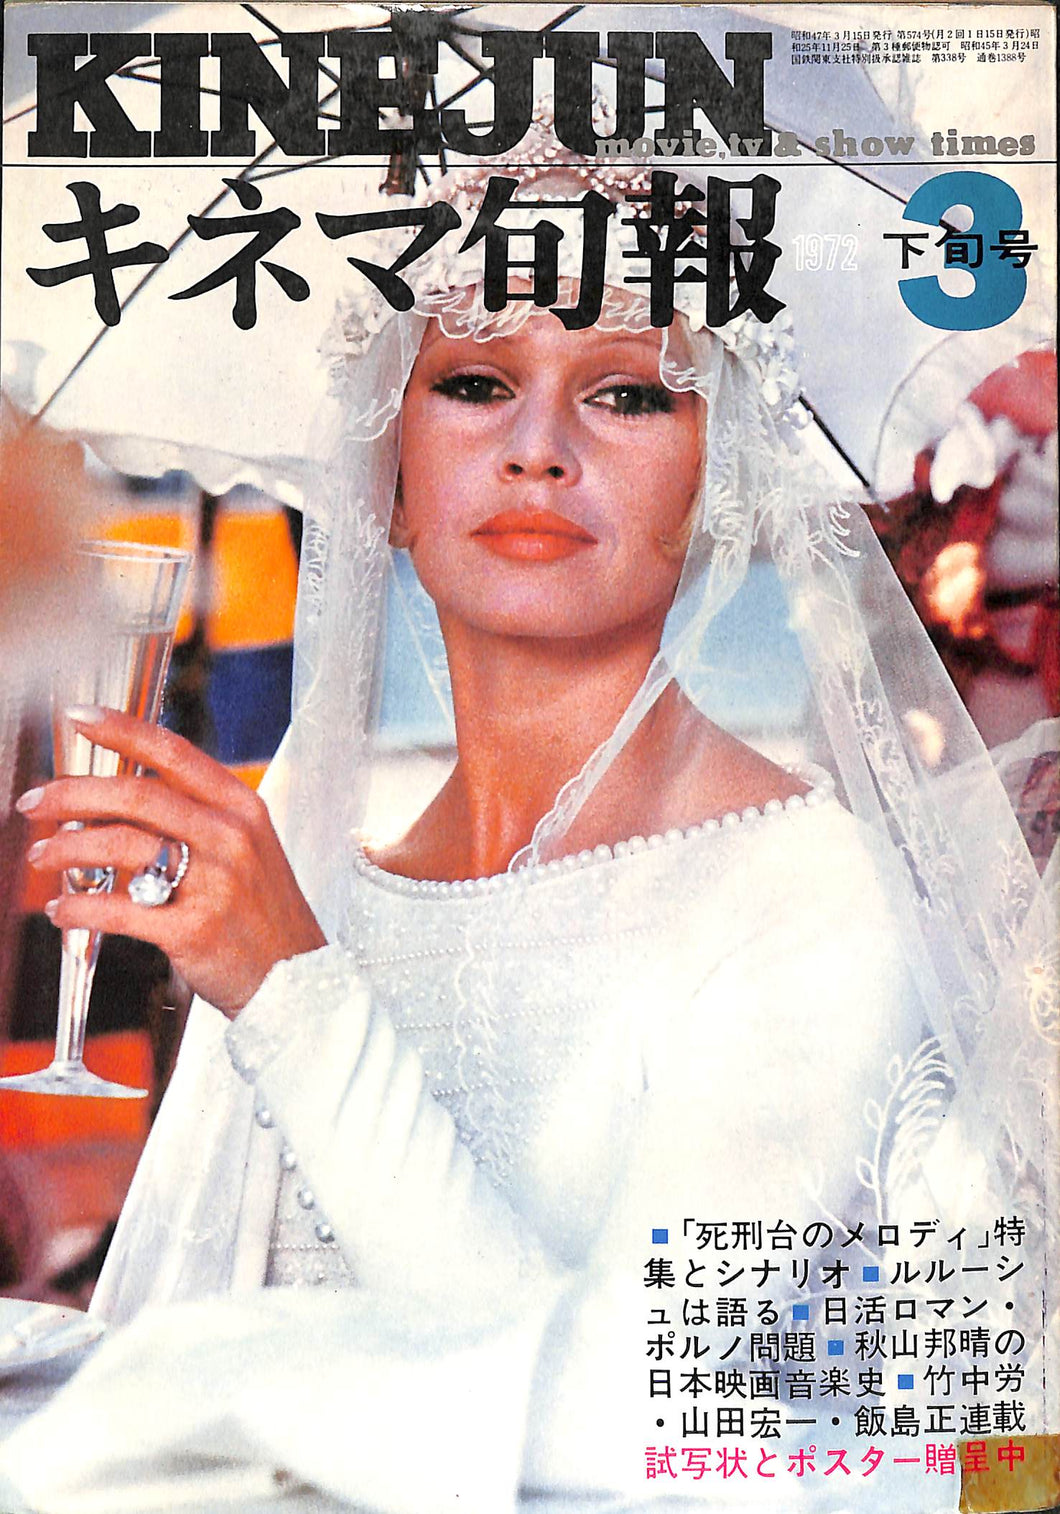 キネマ旬報 1972年 3月下旬号 No.574 表紙の映画:ラムの大通り(ブリジット・バルドー)